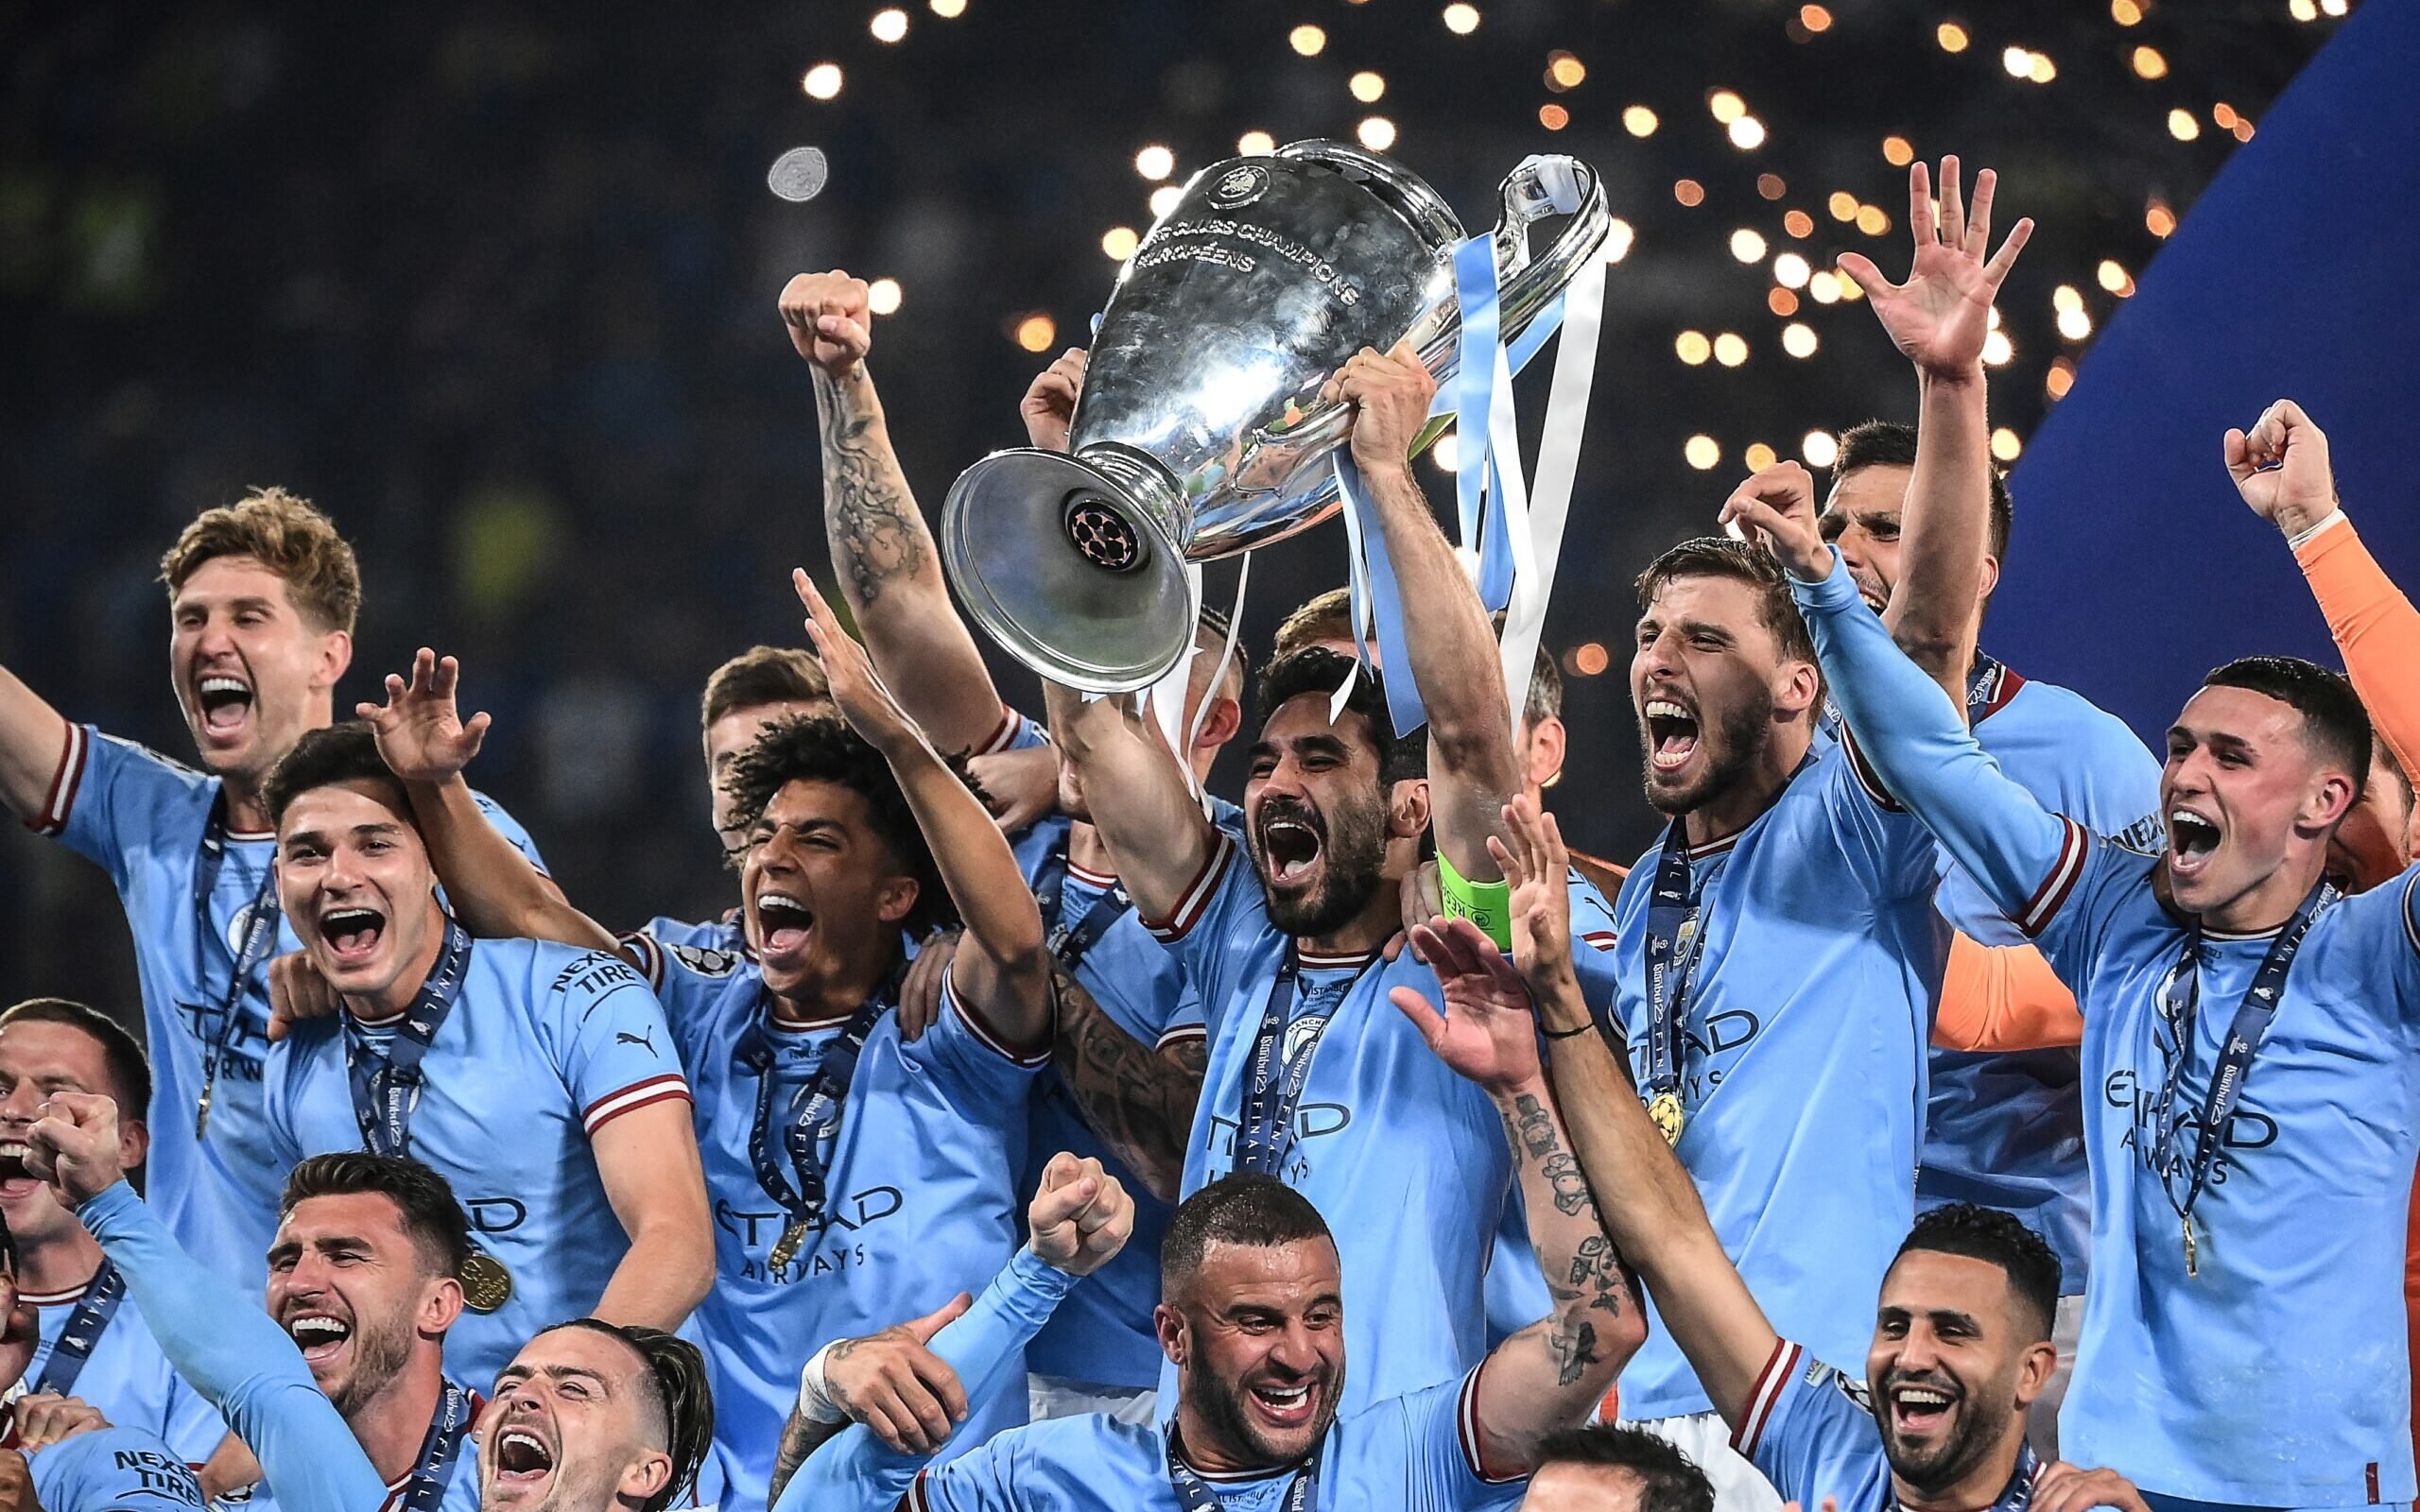 Confira o ranking dos maiores vencedores da Champions League - 28